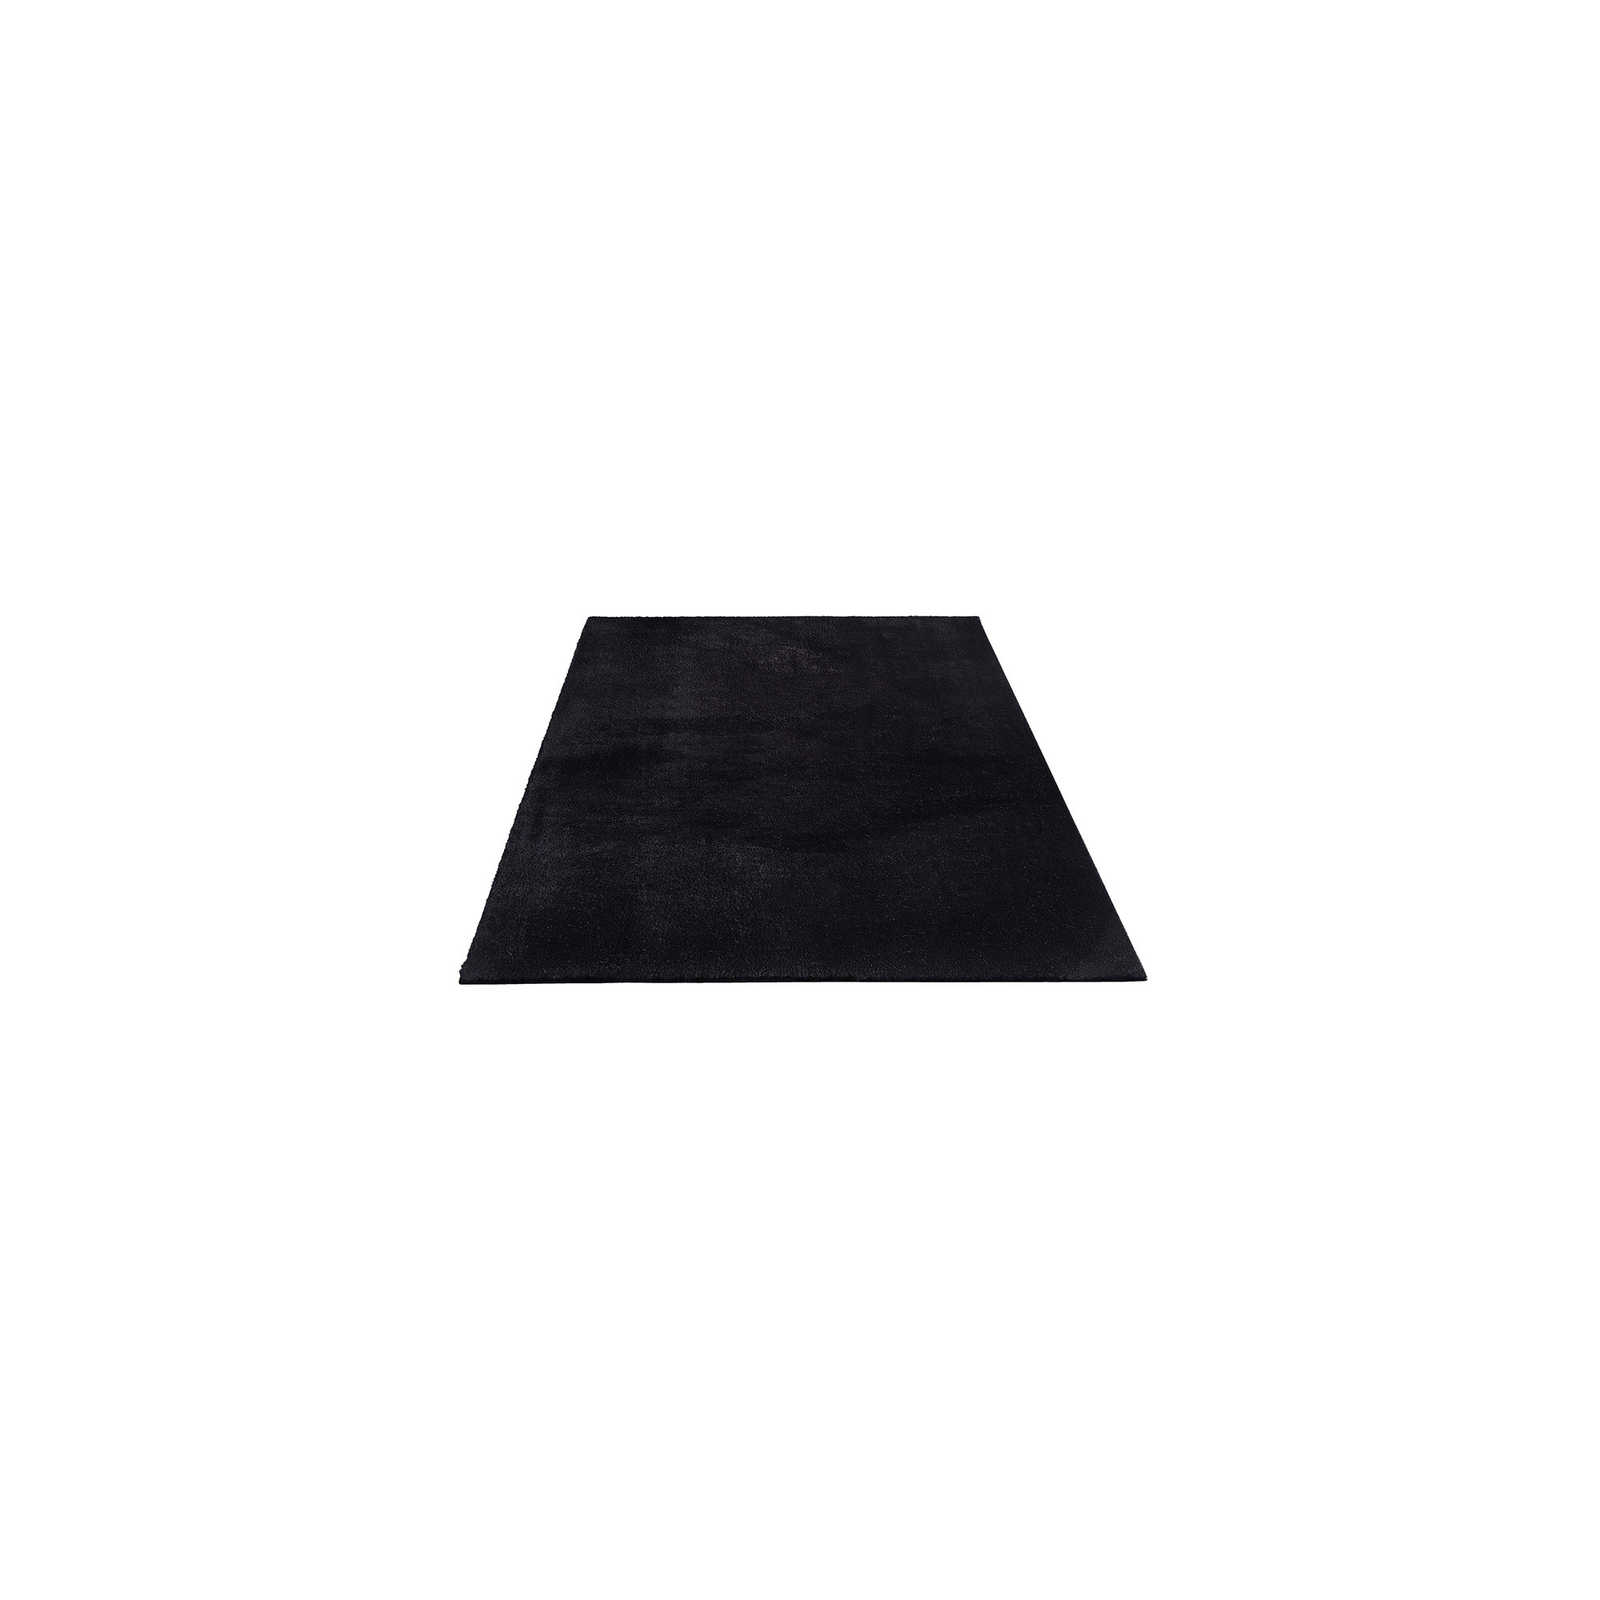 Velvety high pile carpet in black - 150 x 80 cm
